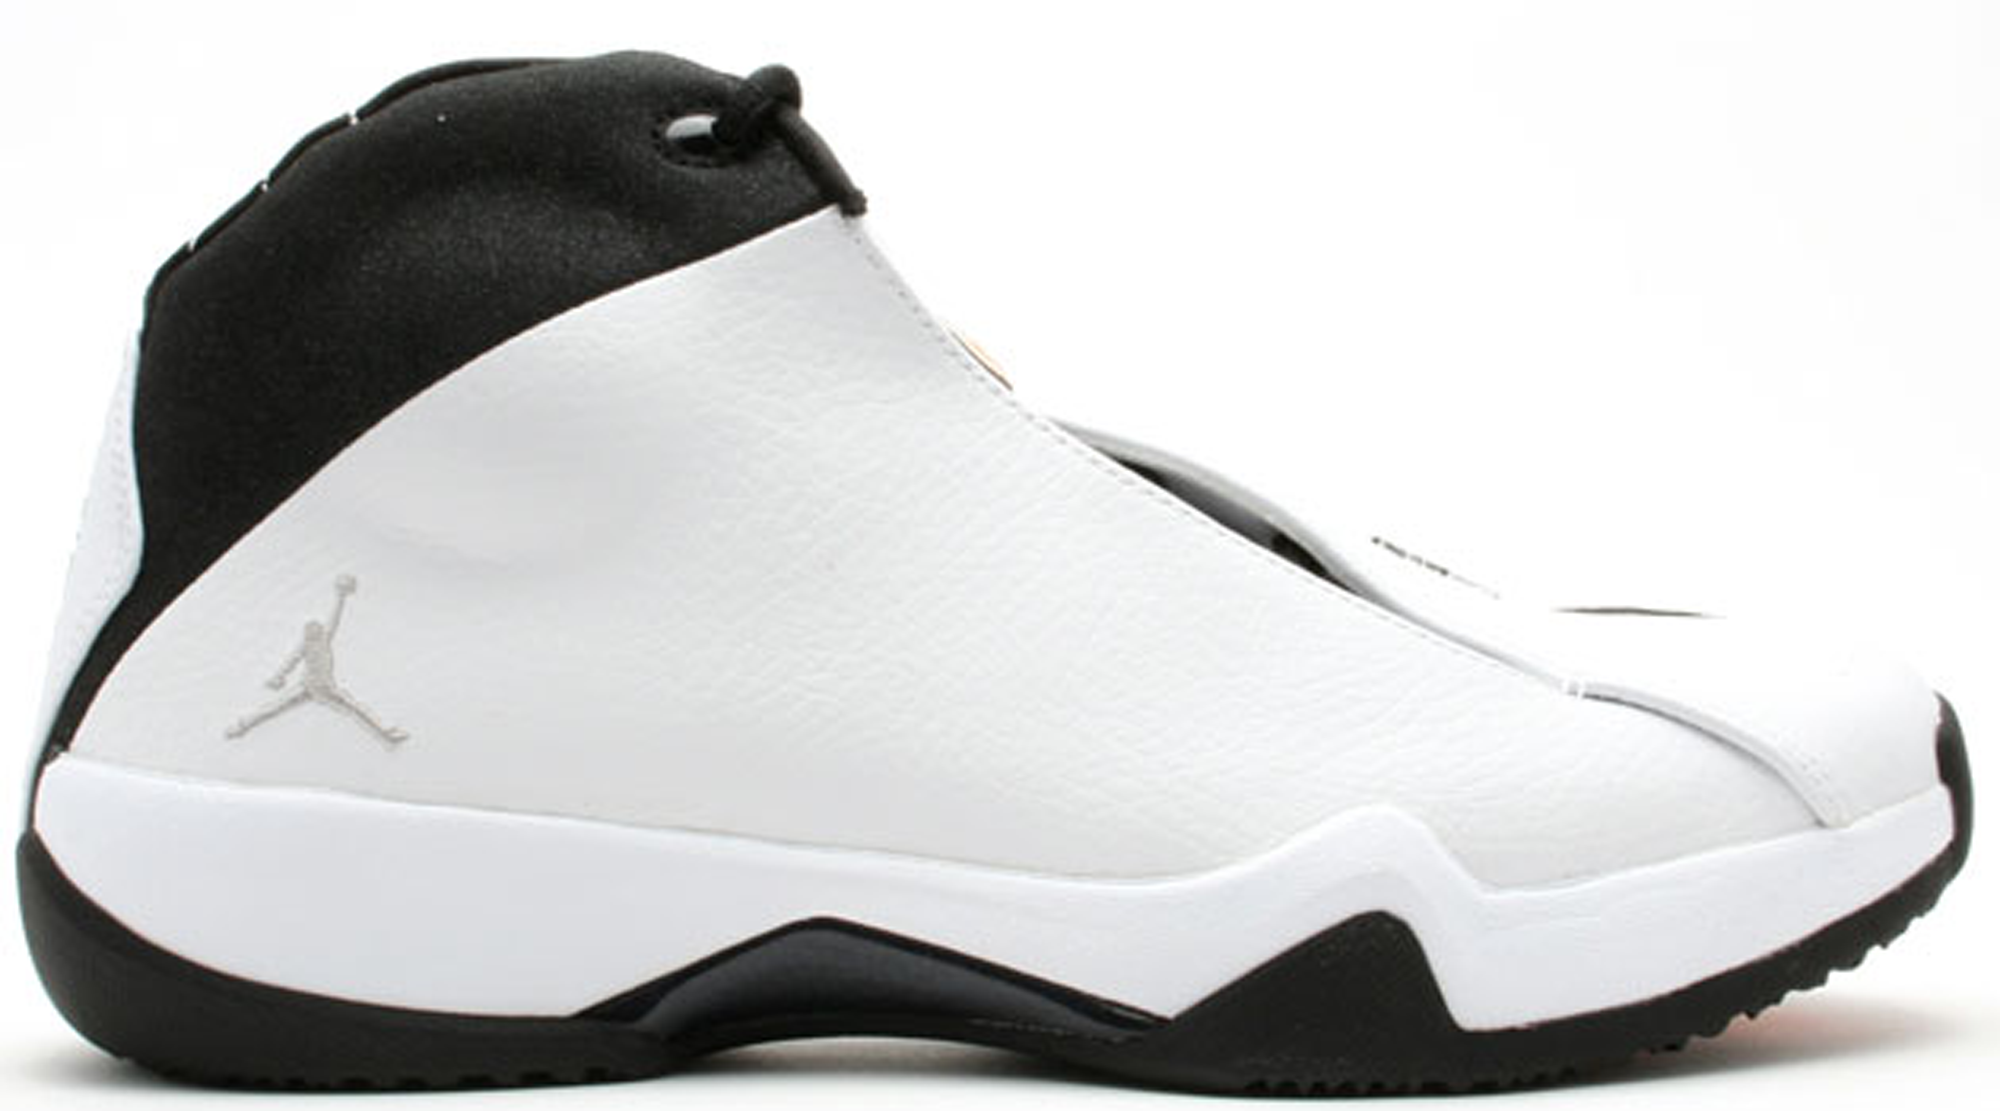 Jordan 21 PE White Black - 314303-101